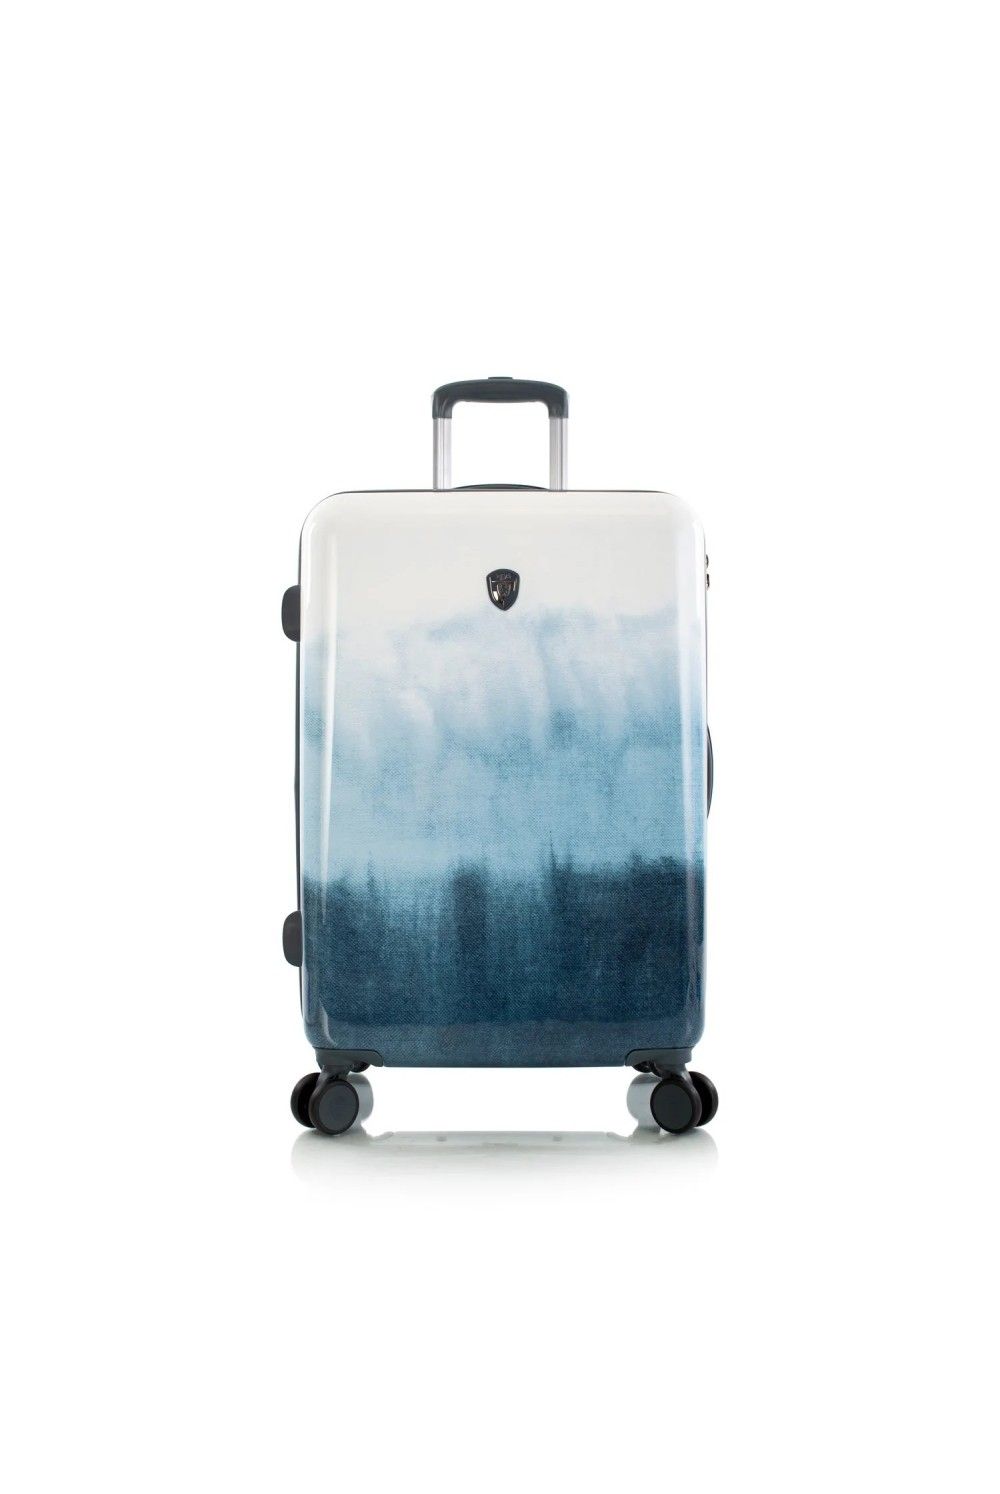 Koffer Heys Blue Fashion 4 Rad Medium 66cm erweiterbar